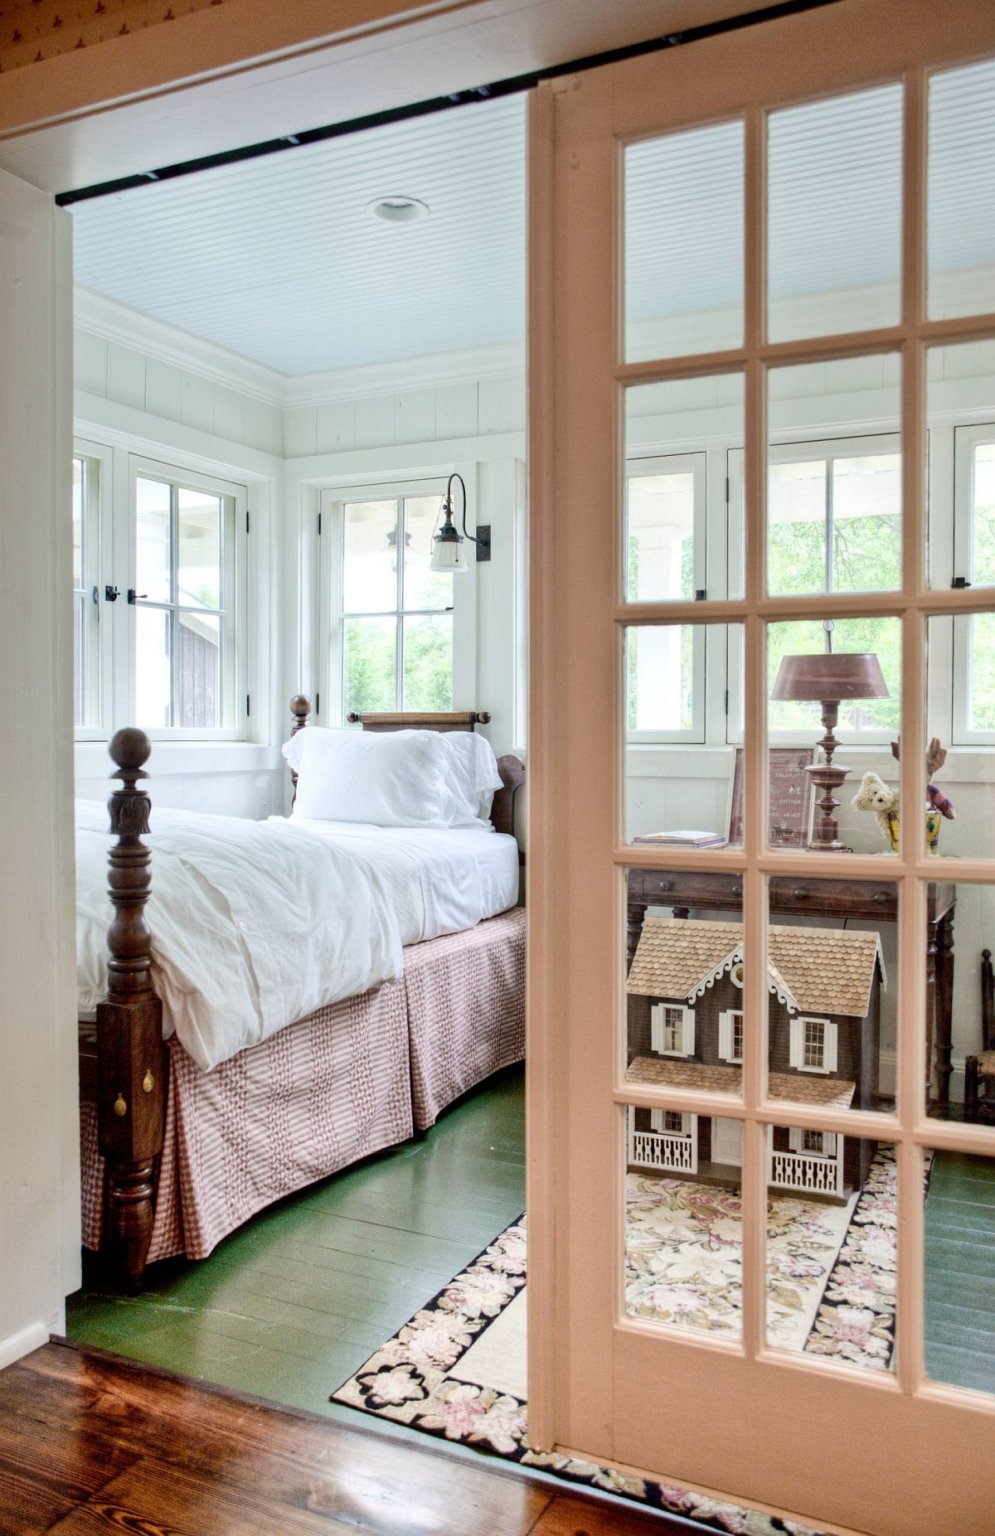 hình ảnh Phòng ngủ trang trại tuyệt đẹp với sàn sơn màu xanh lá cây kết hợp cùng màu  trắng và gỗ xung quanh.